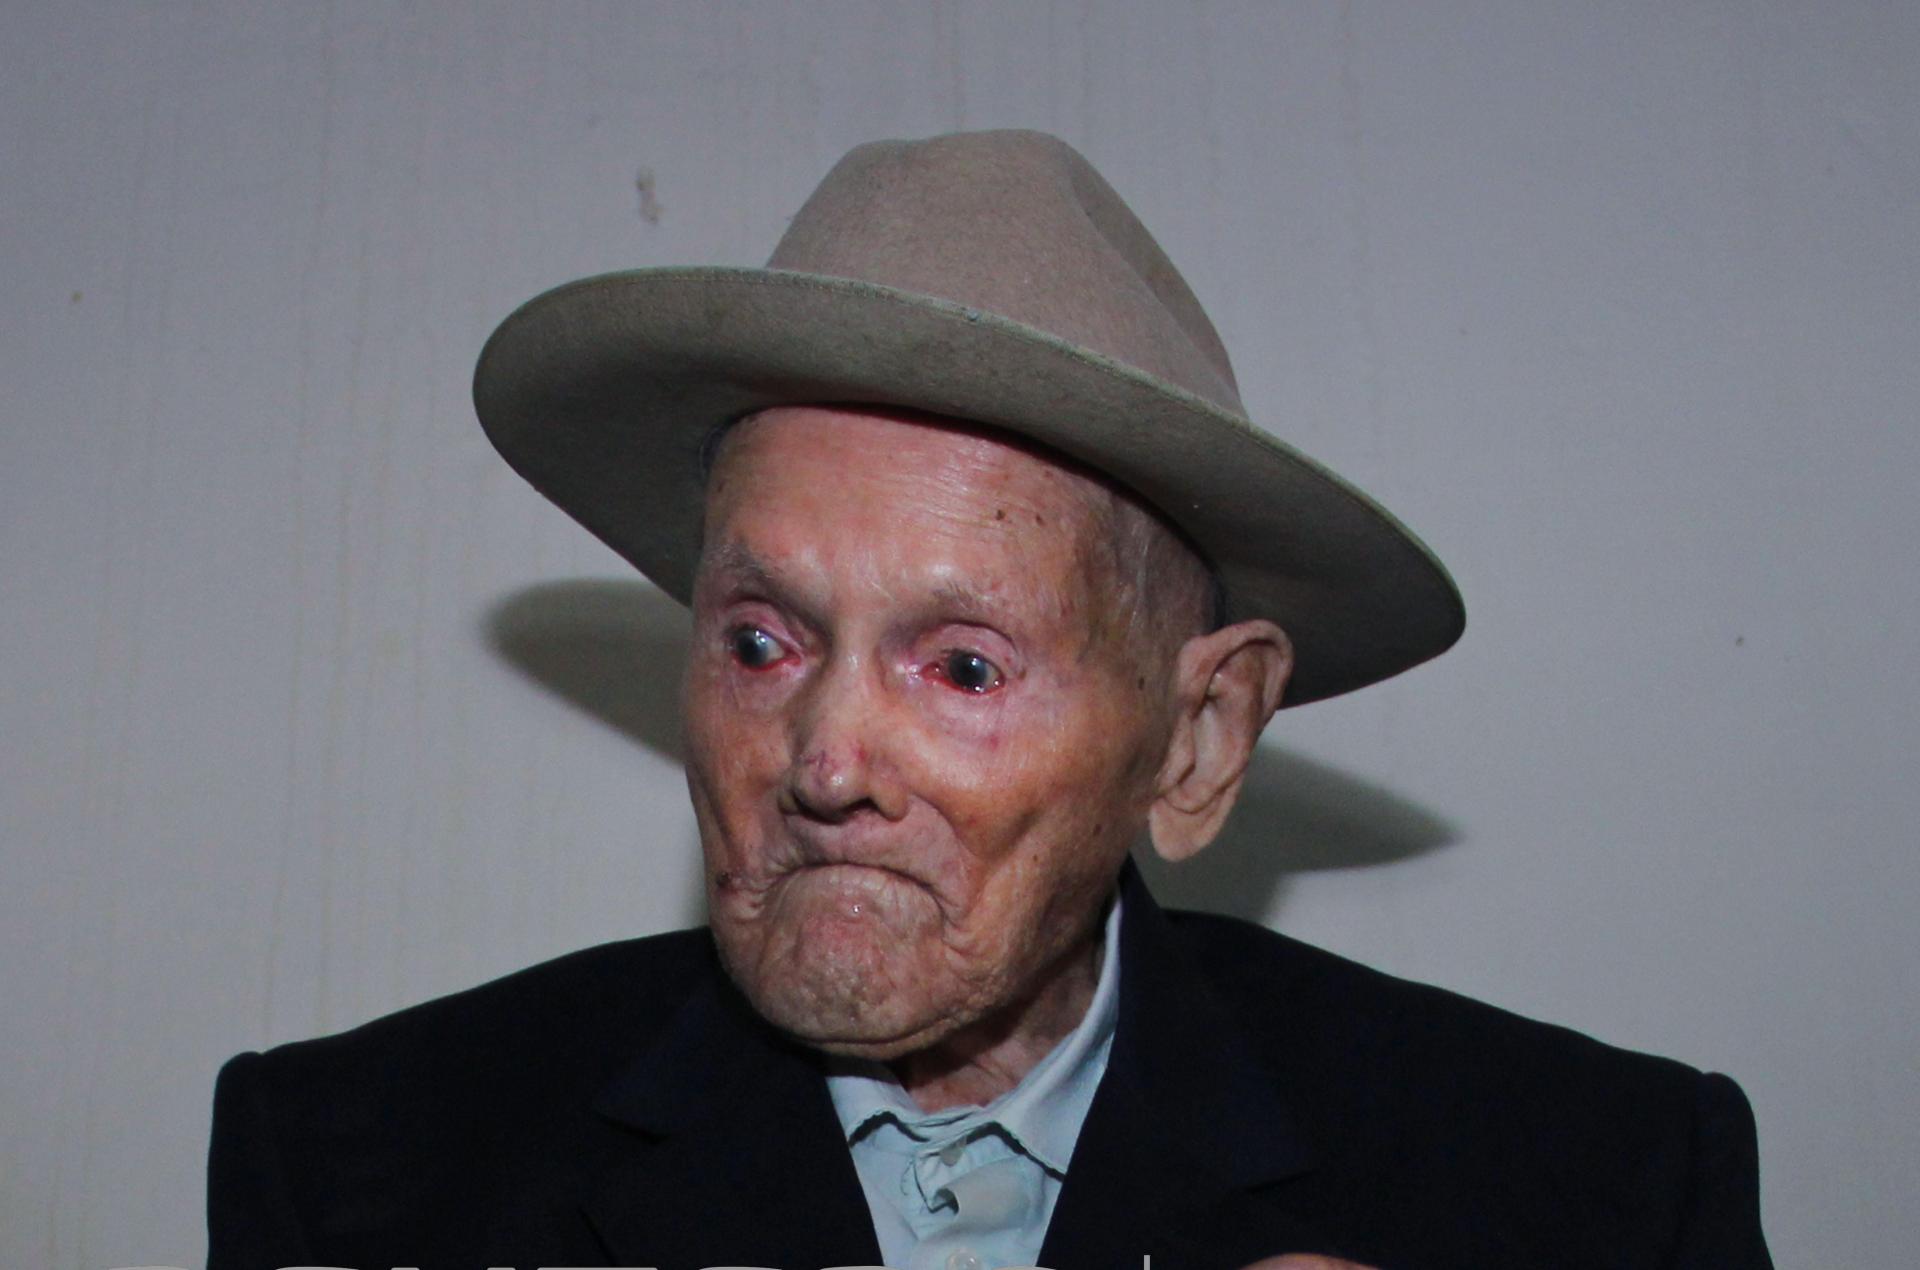 113 岁委内瑞拉人莫拉被确认为“世界上最长寿男性”